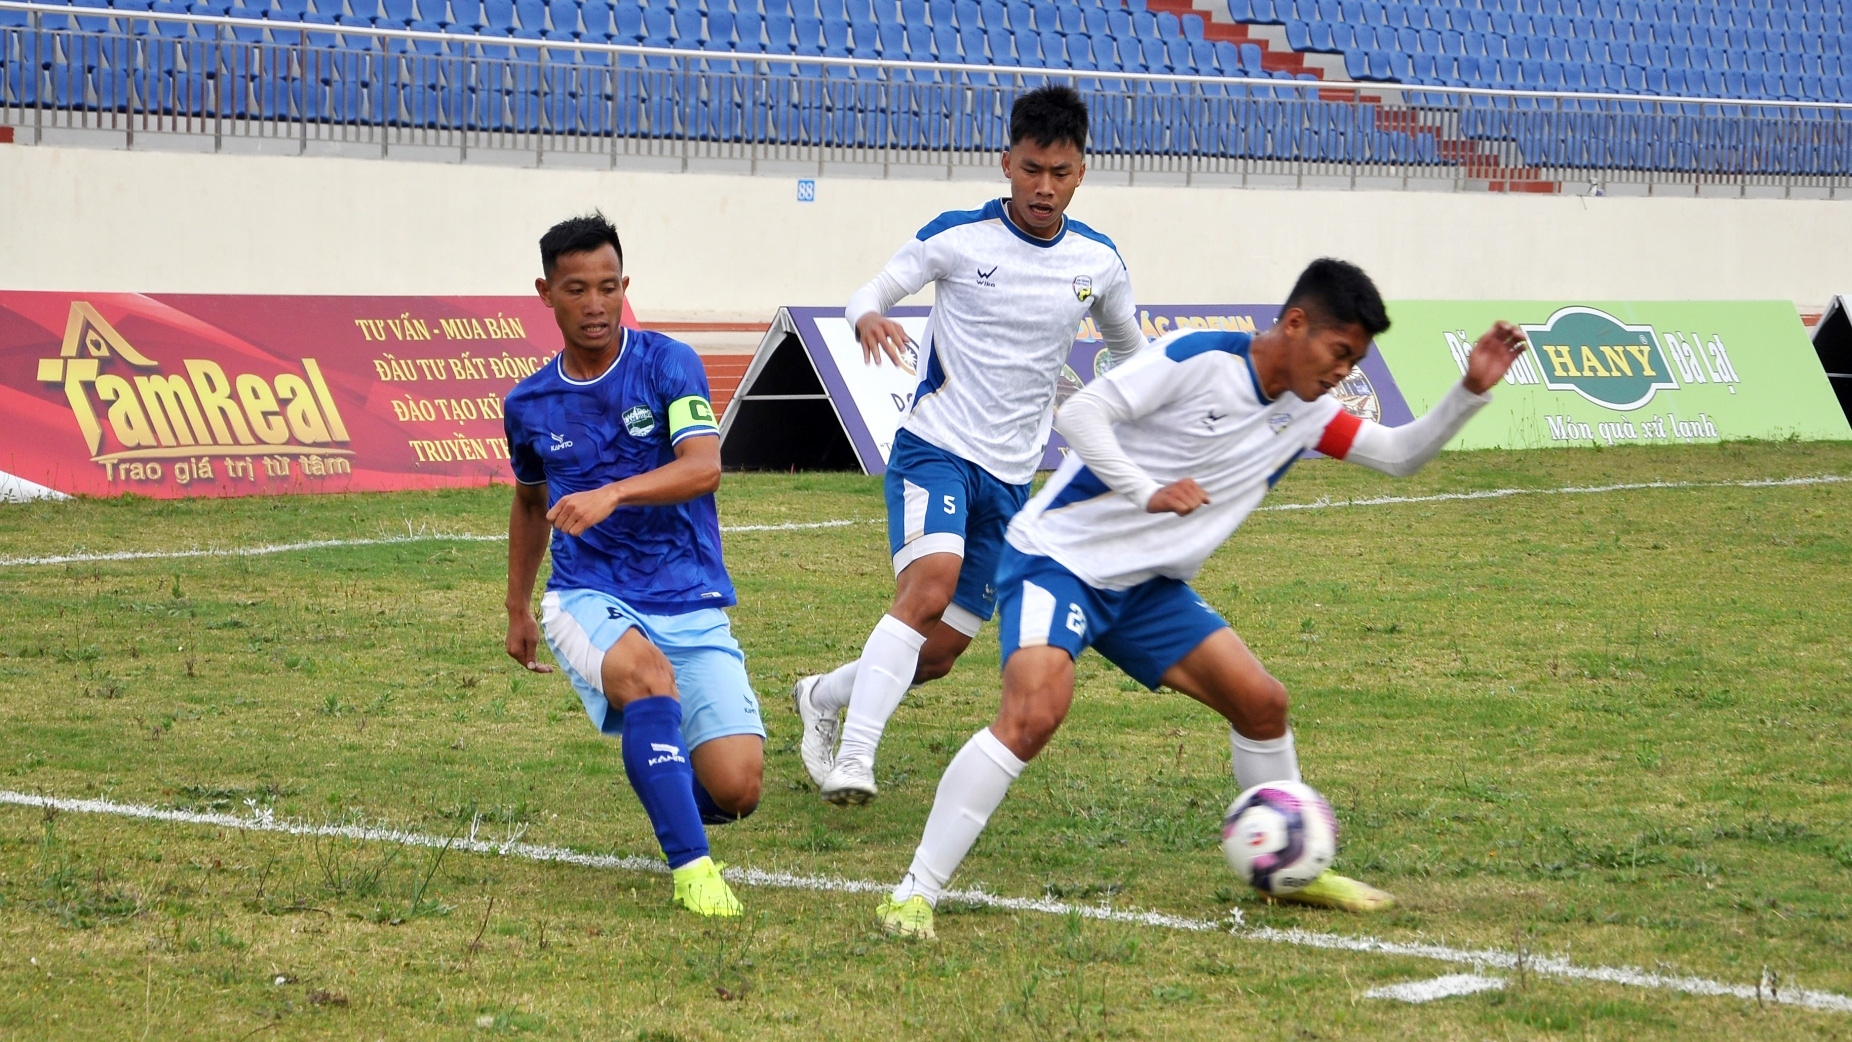 Lâm Đồng thắng kịch tính 3 - 2 trước An Giang trên sân nhà Đà Lạt